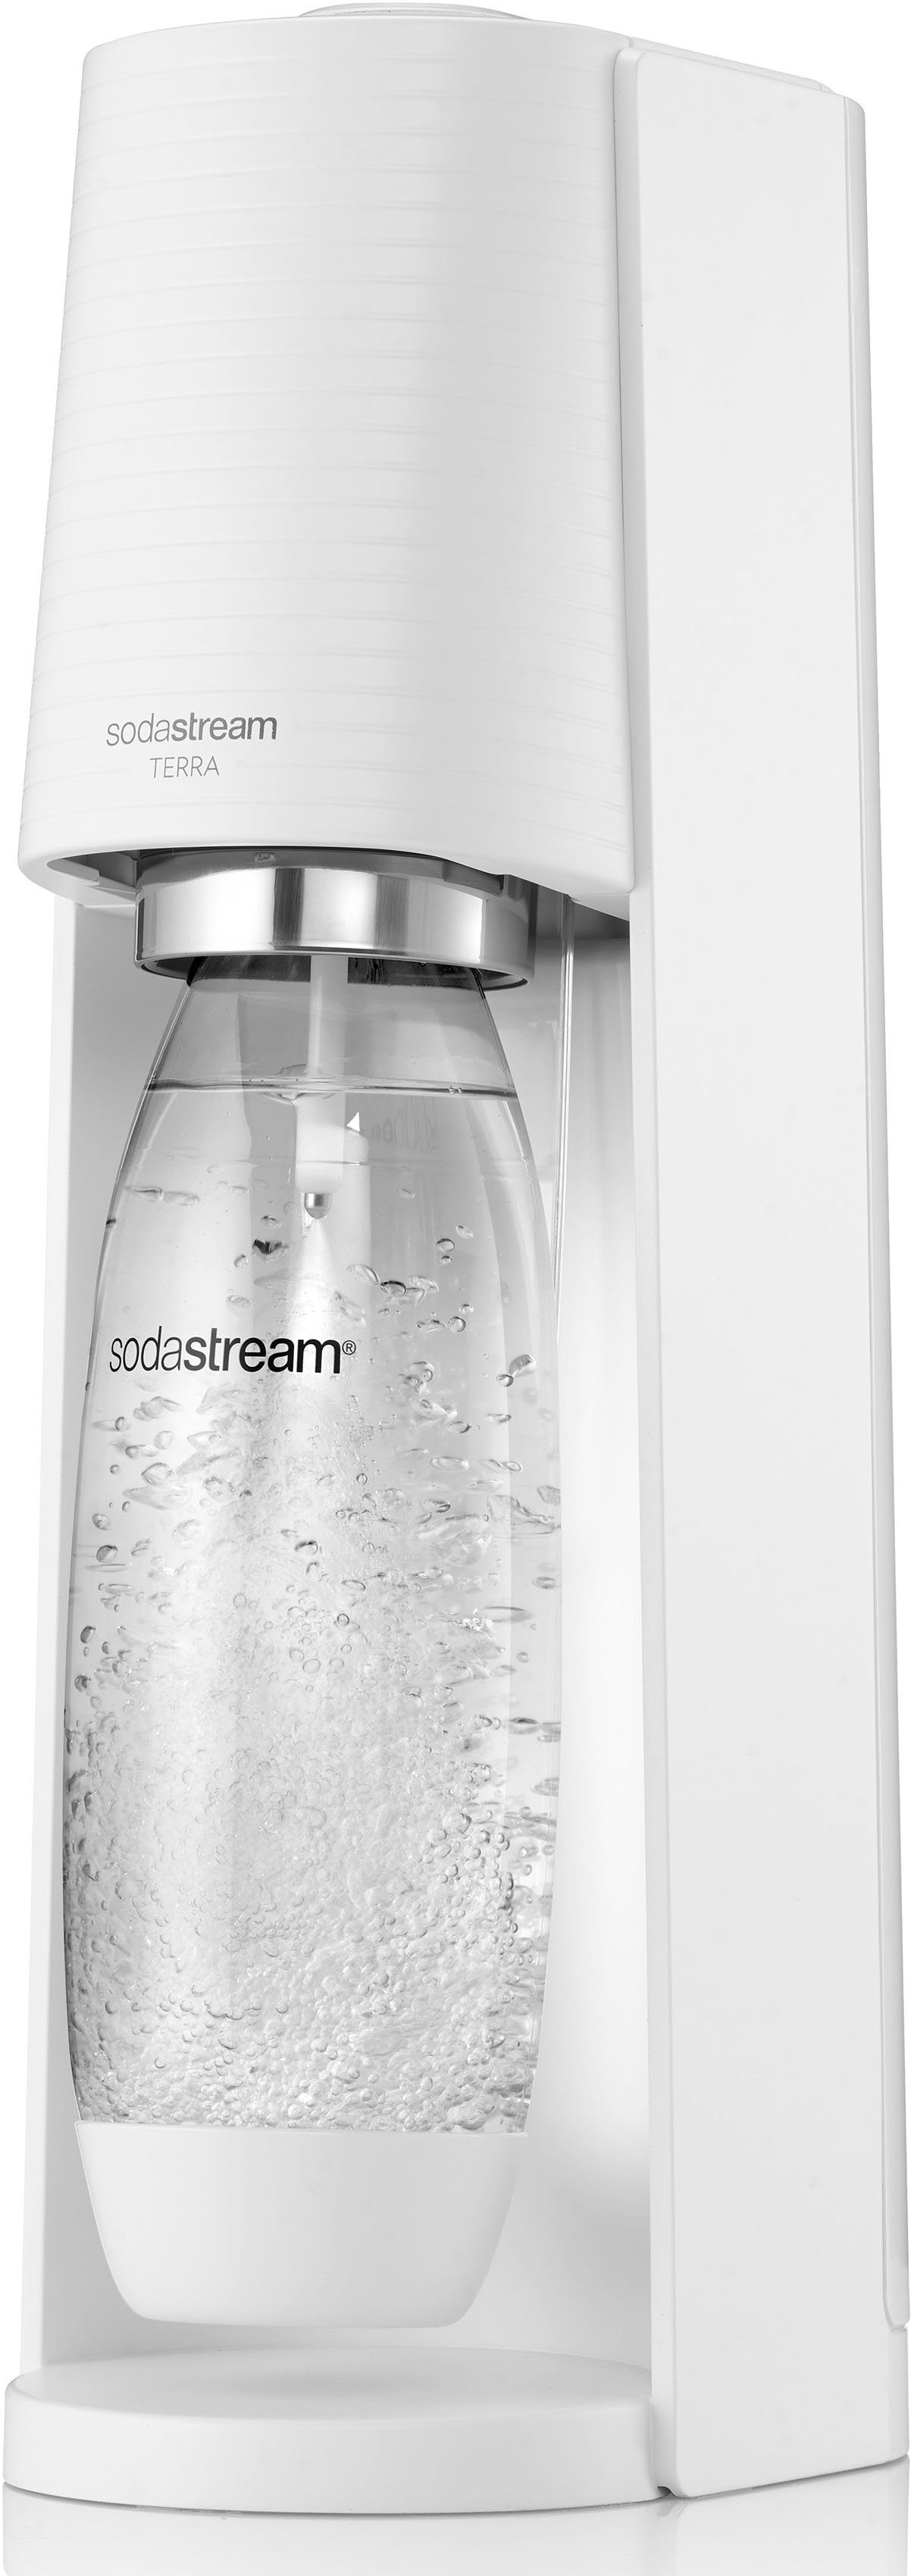 SodaStream Wassersprudler TERRA, inkl. 1x CO2-Zylinder weiß 1x spülmaschinenfeste Kunststoff-Flasche 1L CQC